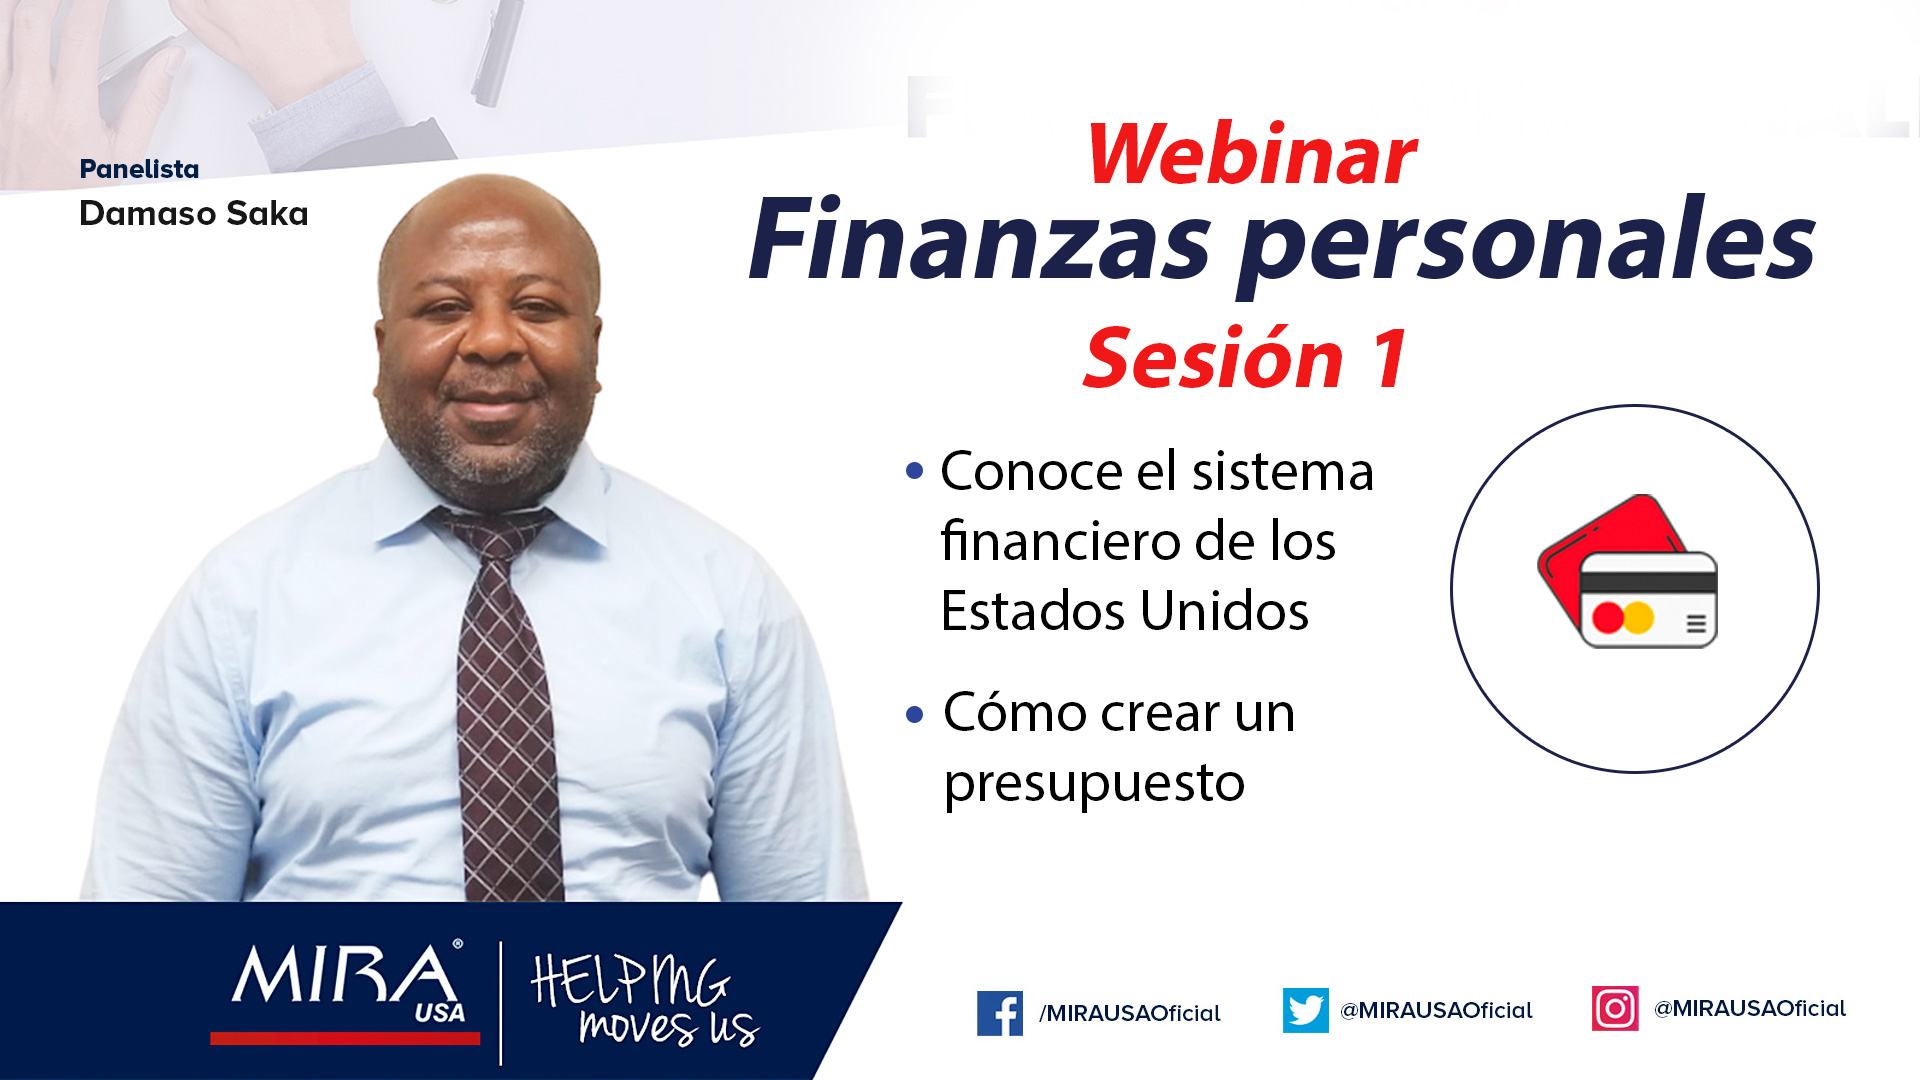 Webinar: Finanzas personales (Sesión 1) con Damaso Saka